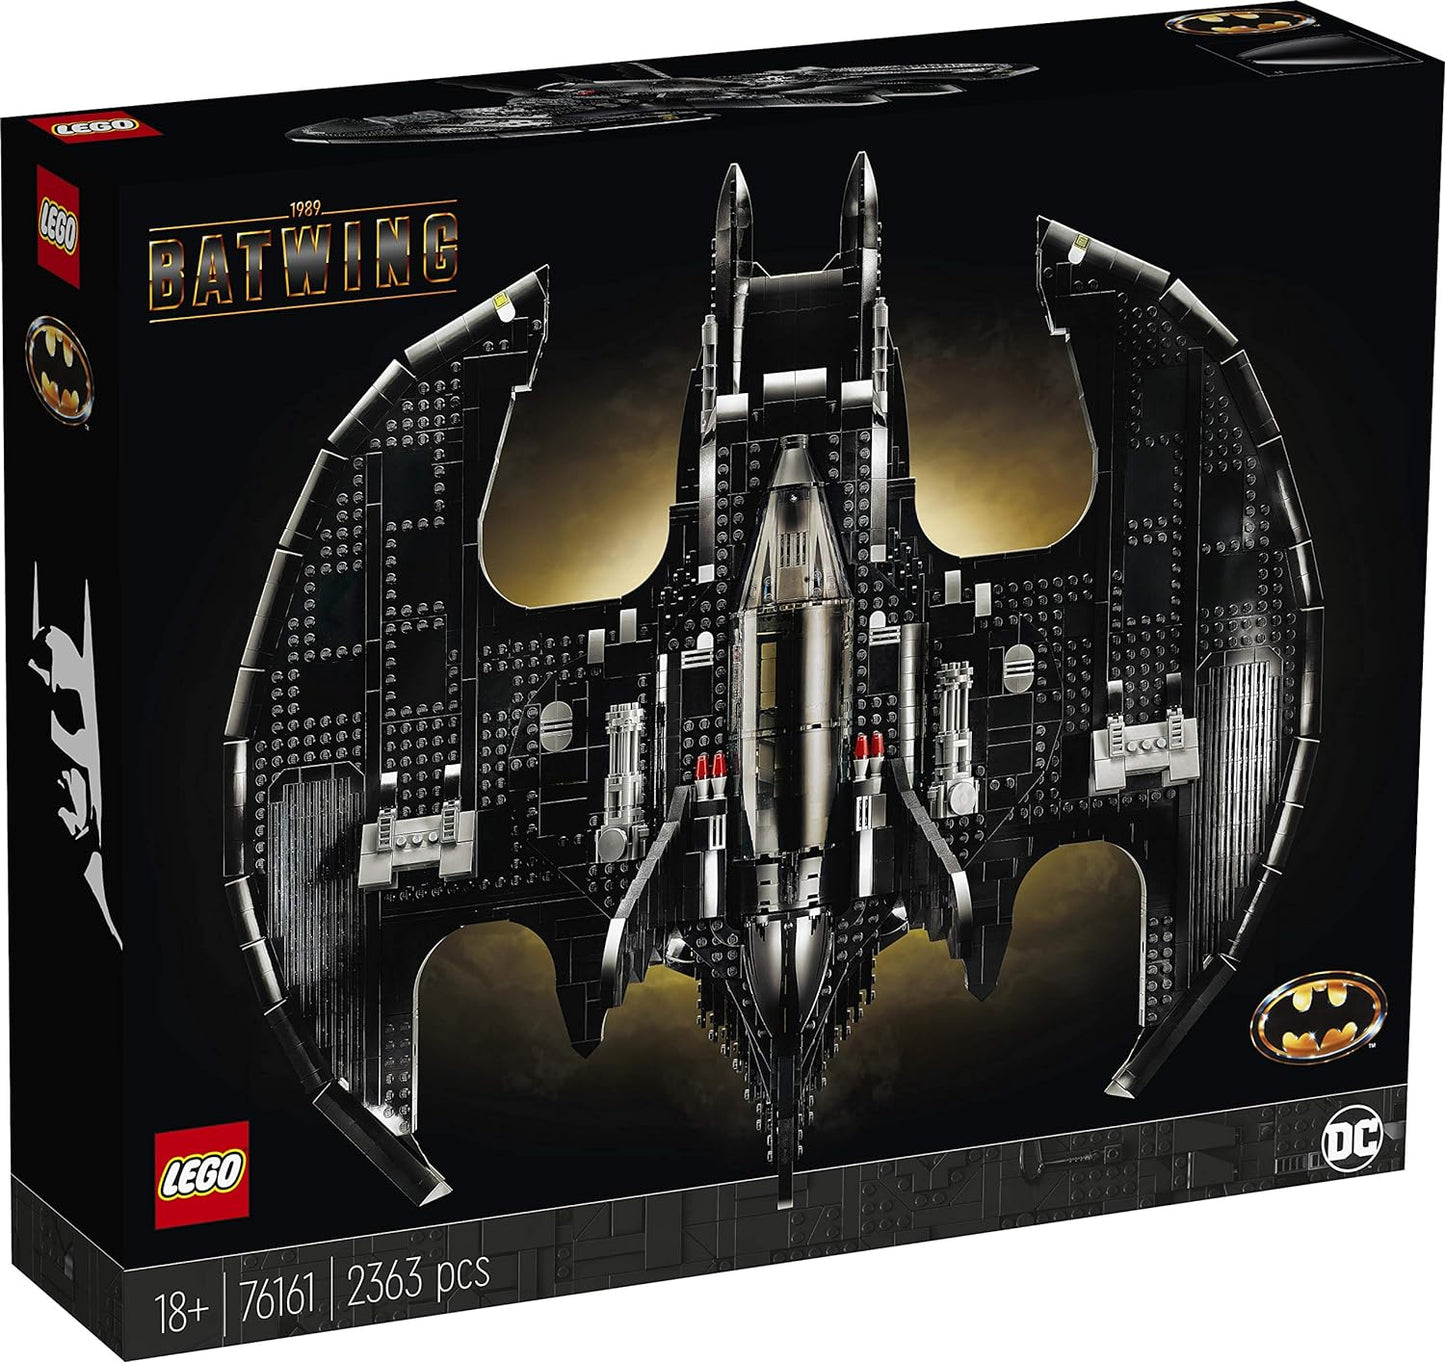 LEGO 1989 Batwing Set 76161